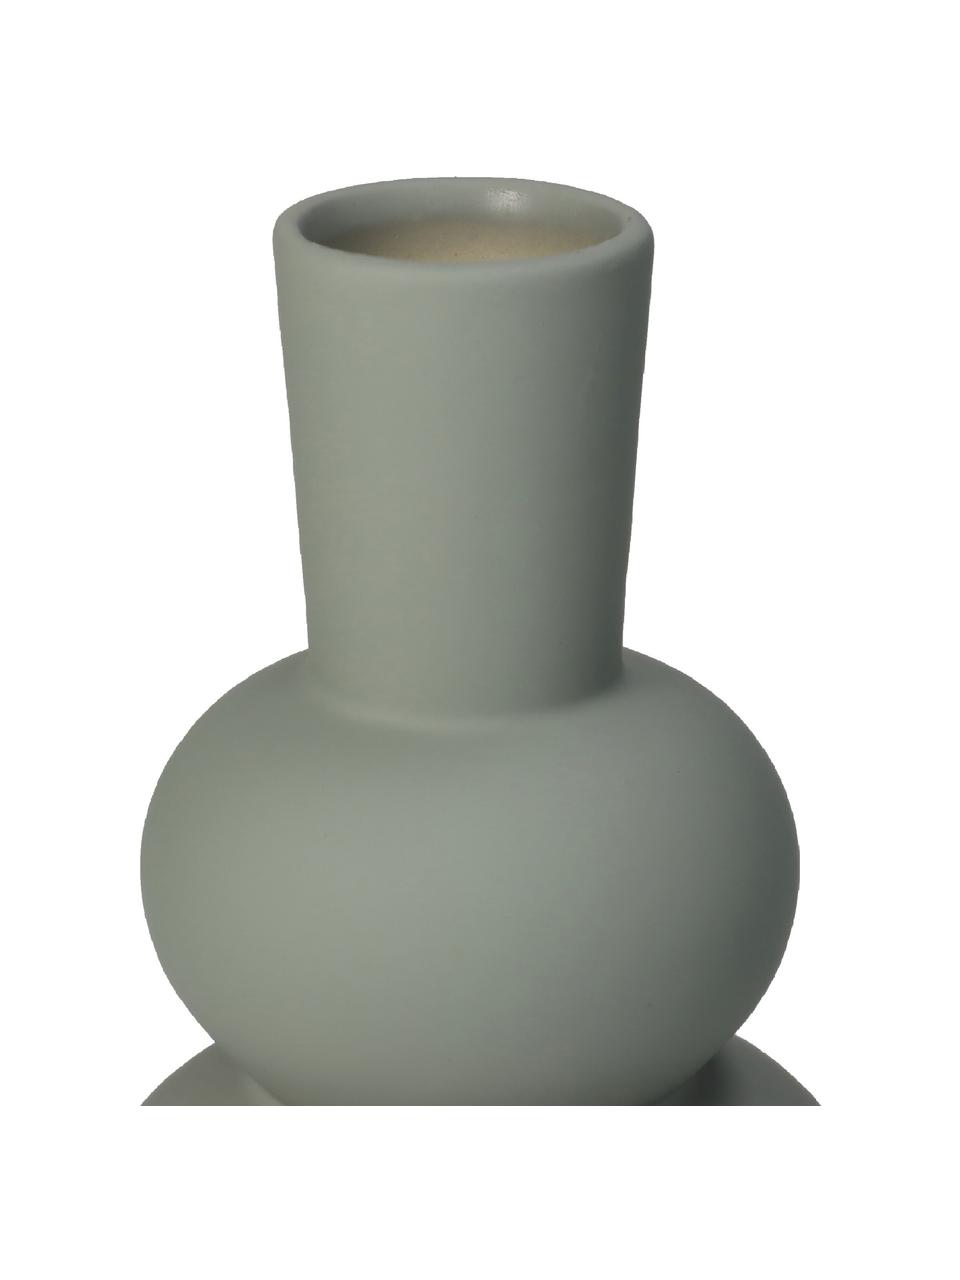 Vaso moderno in gres color verde-grigio Eathan, Gres, Verde-grigio, Ø 11 x Alt. 20 cm